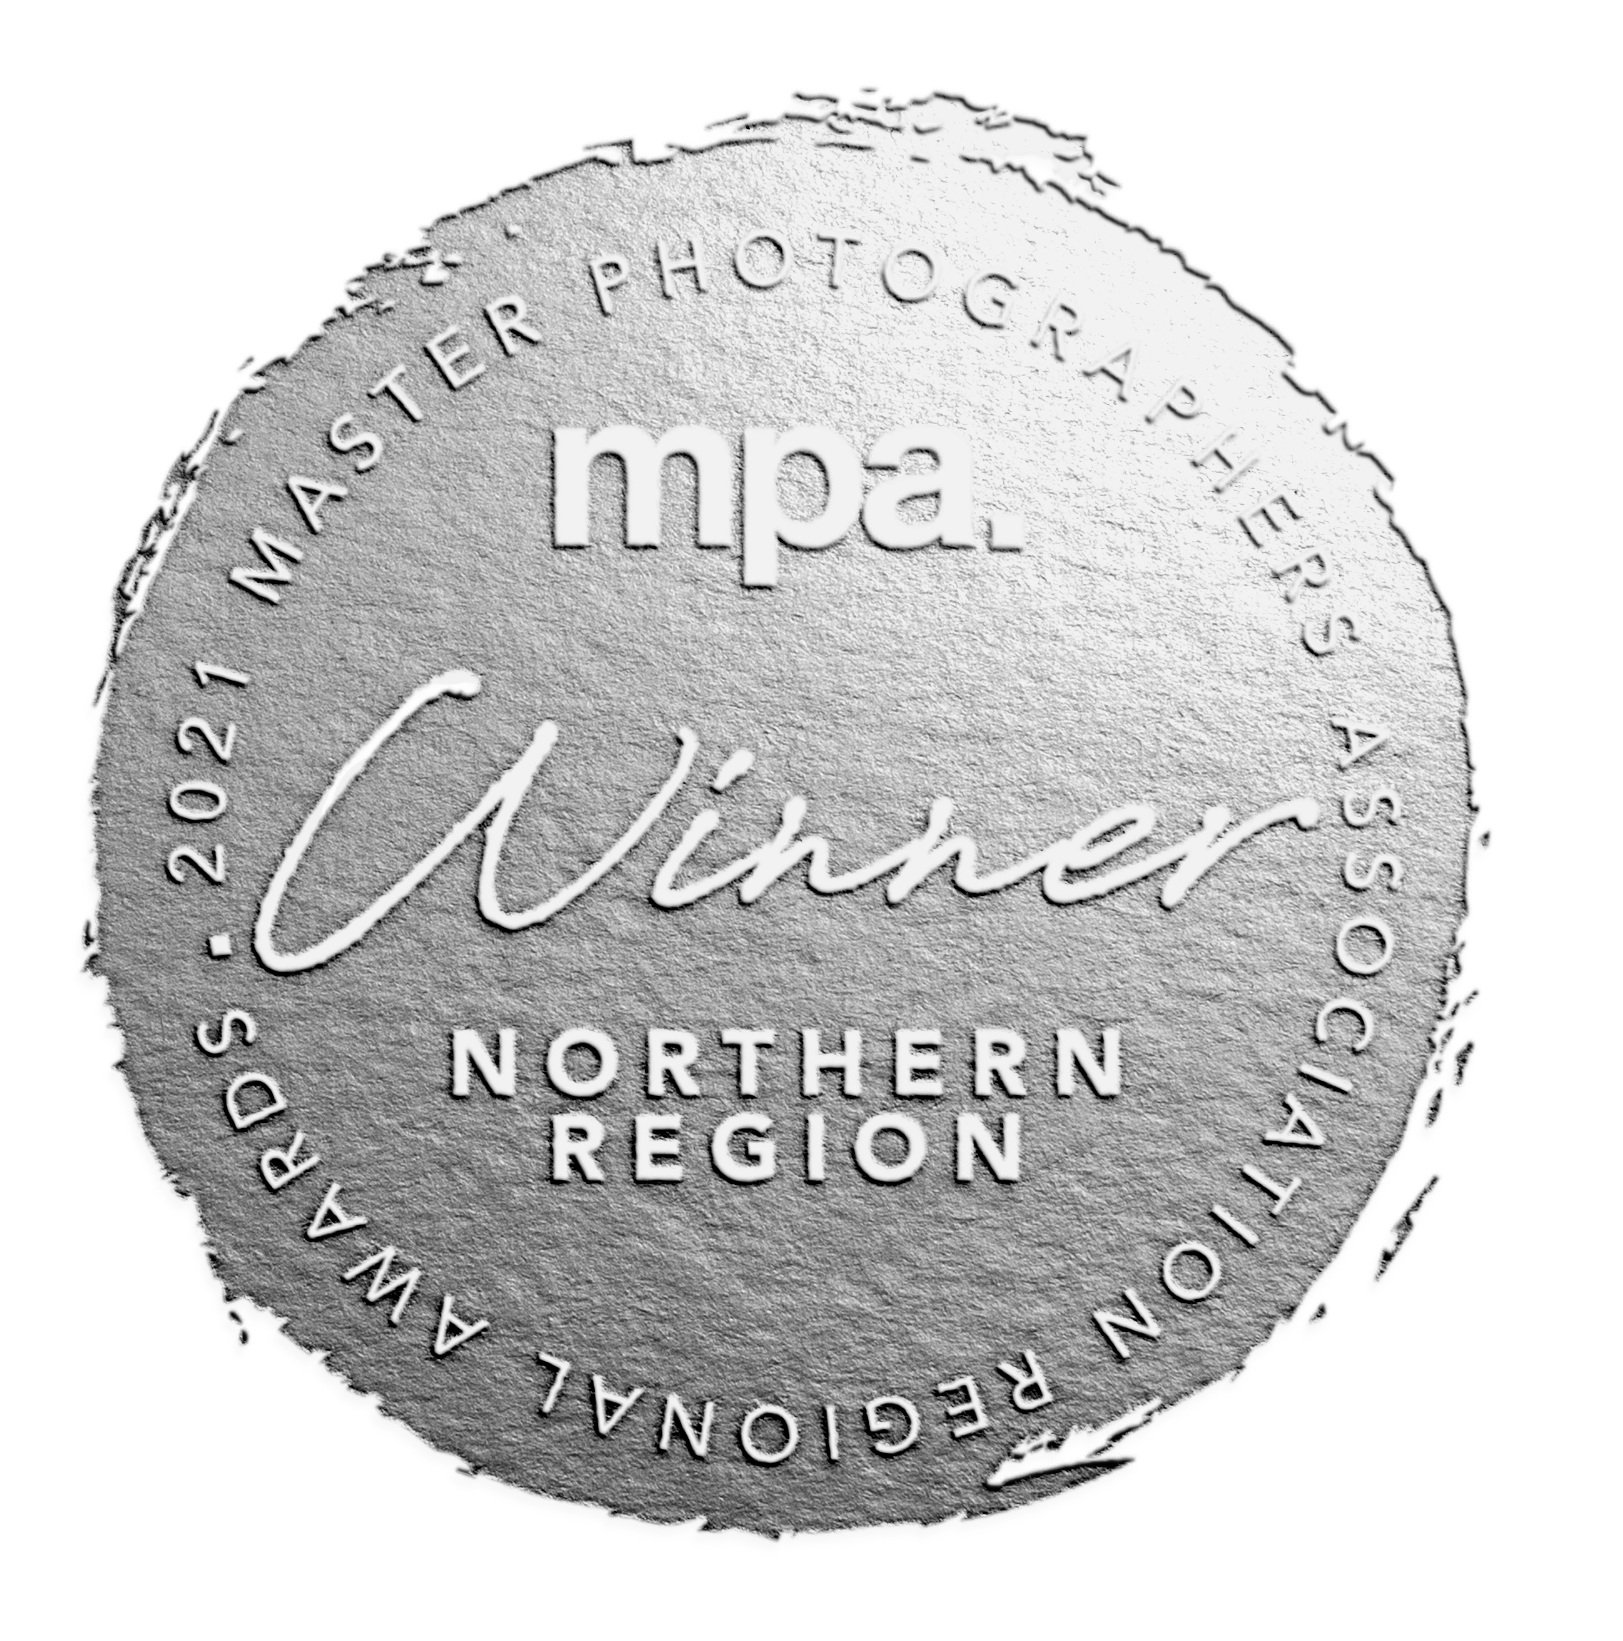 Northern+winner+seal+copy.jpg